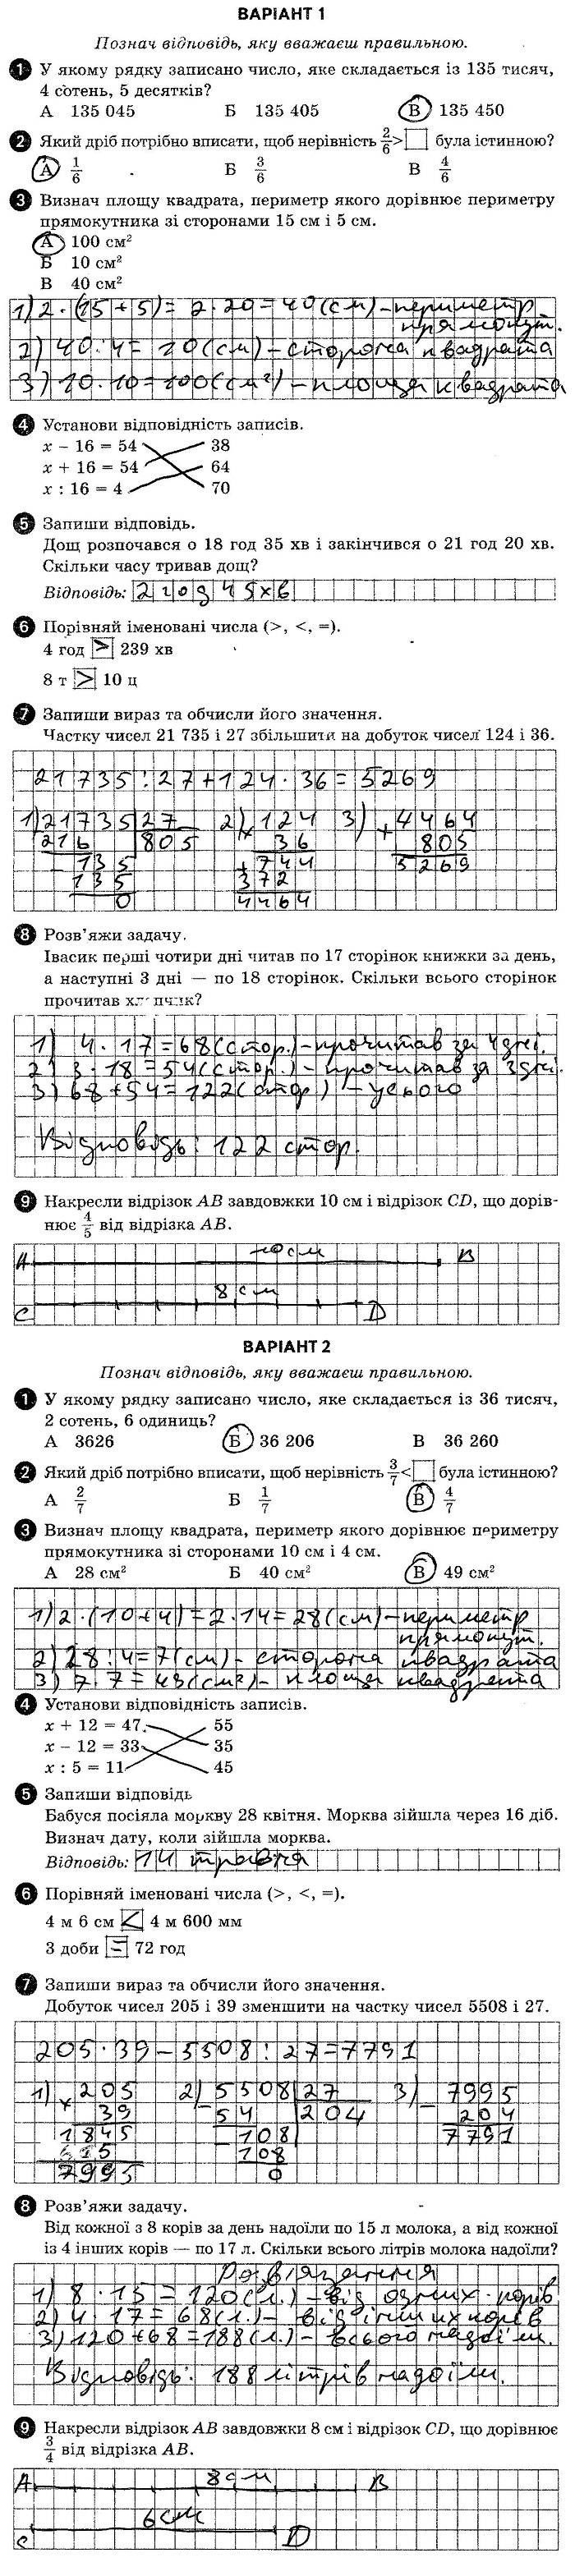 ГДЗ (відповіді) Тестова контрольна робота 3 4 клас ДПА-2019 Математика Шевченко (підсумкові контрольні роботи)